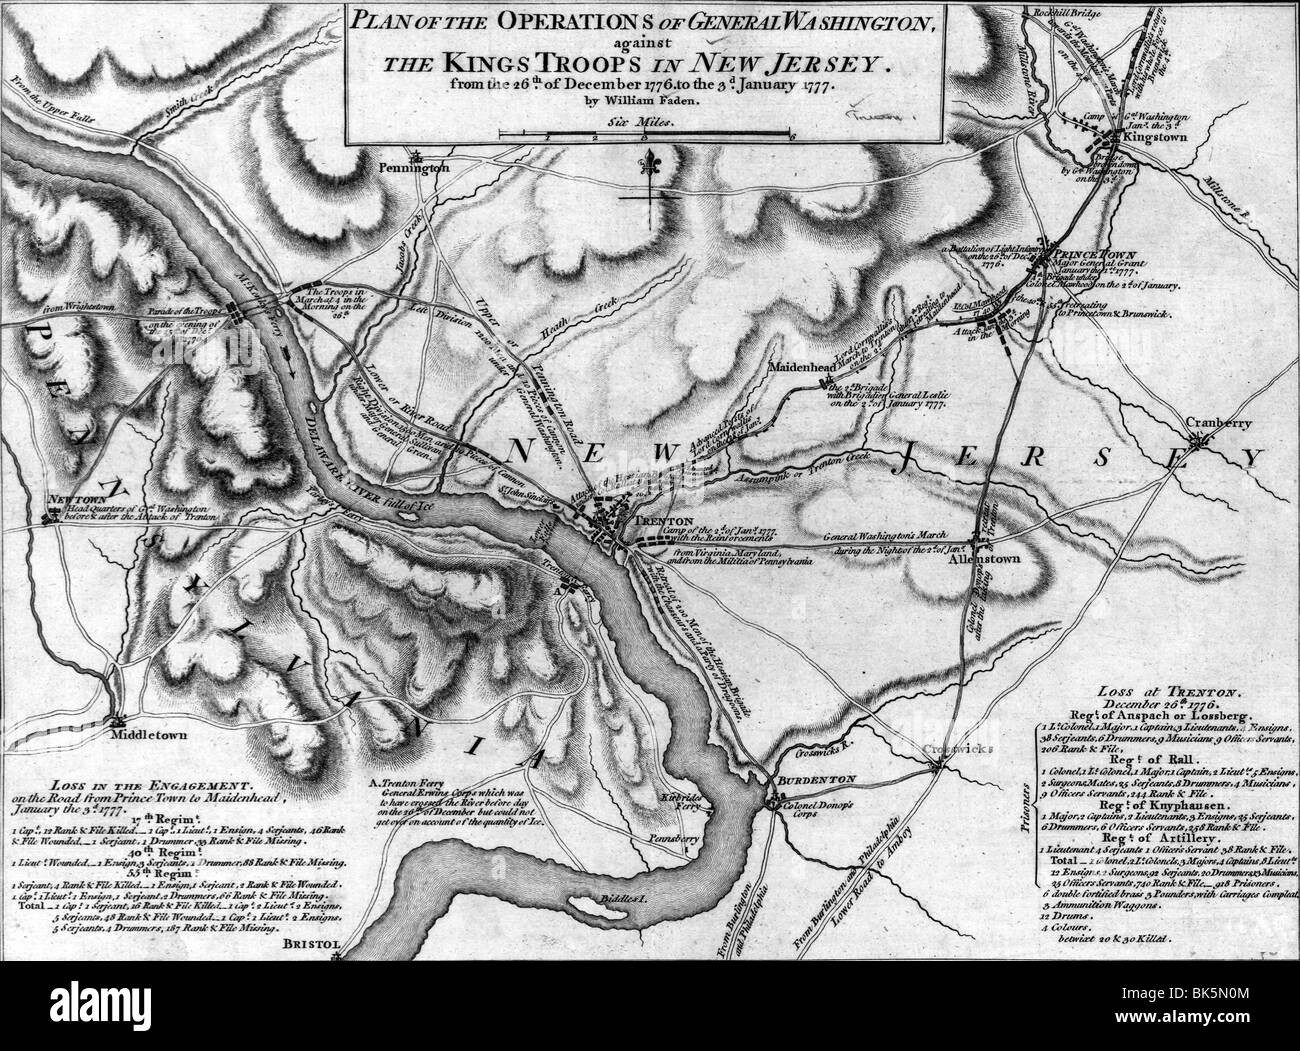 Carte des opérations du général Washington, contre les rois des troupes dans le New Jersey, à partir du 26 décembre 1776 au 3 janvier 1777 Banque D'Images